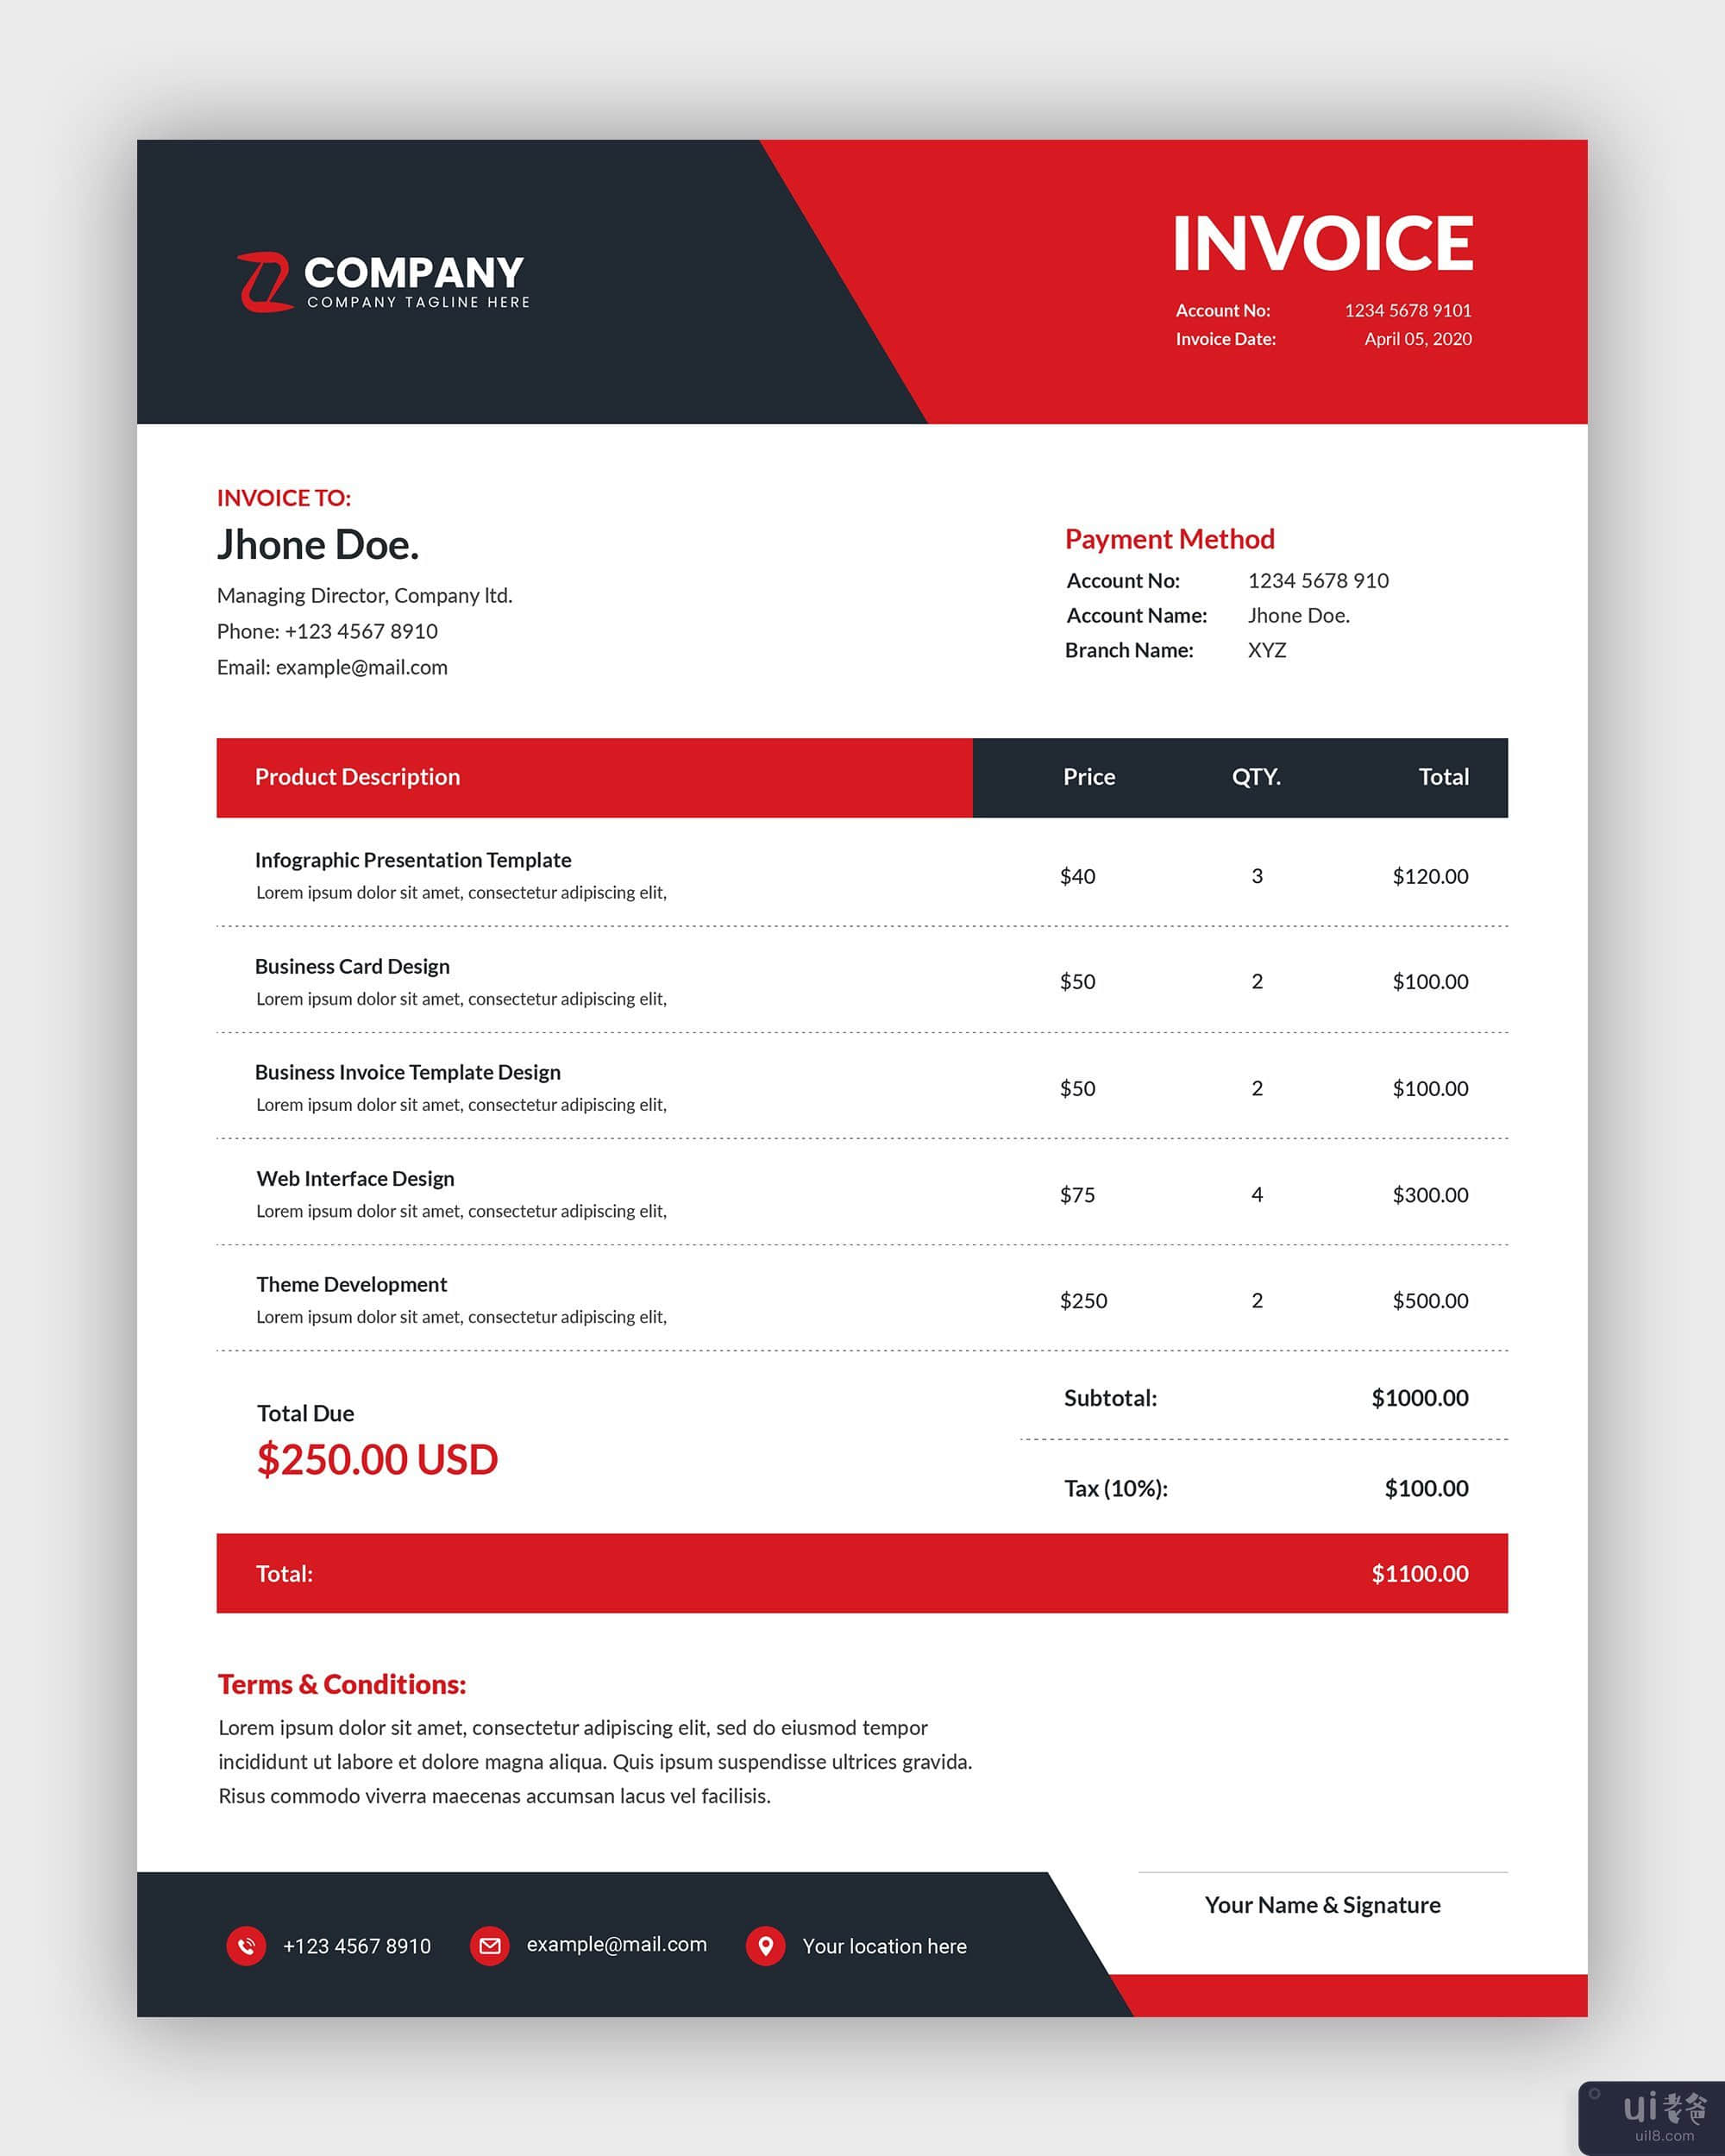 最小的商业发票模板设计(Minimal business invoice template design)插图